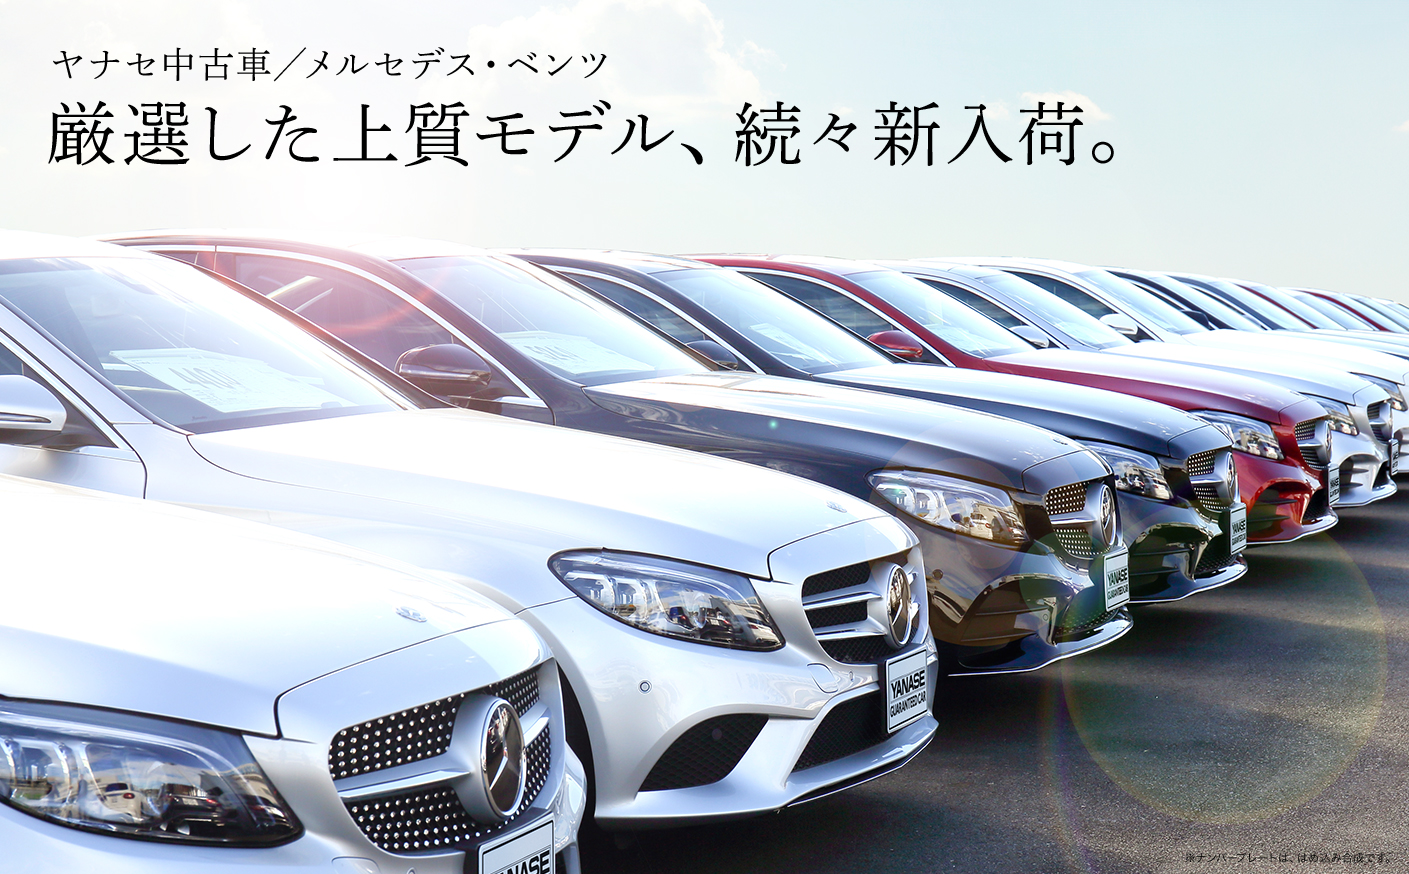 公式 ヤナセの認定中古車検索 中古車情報サイト Yanase Jp